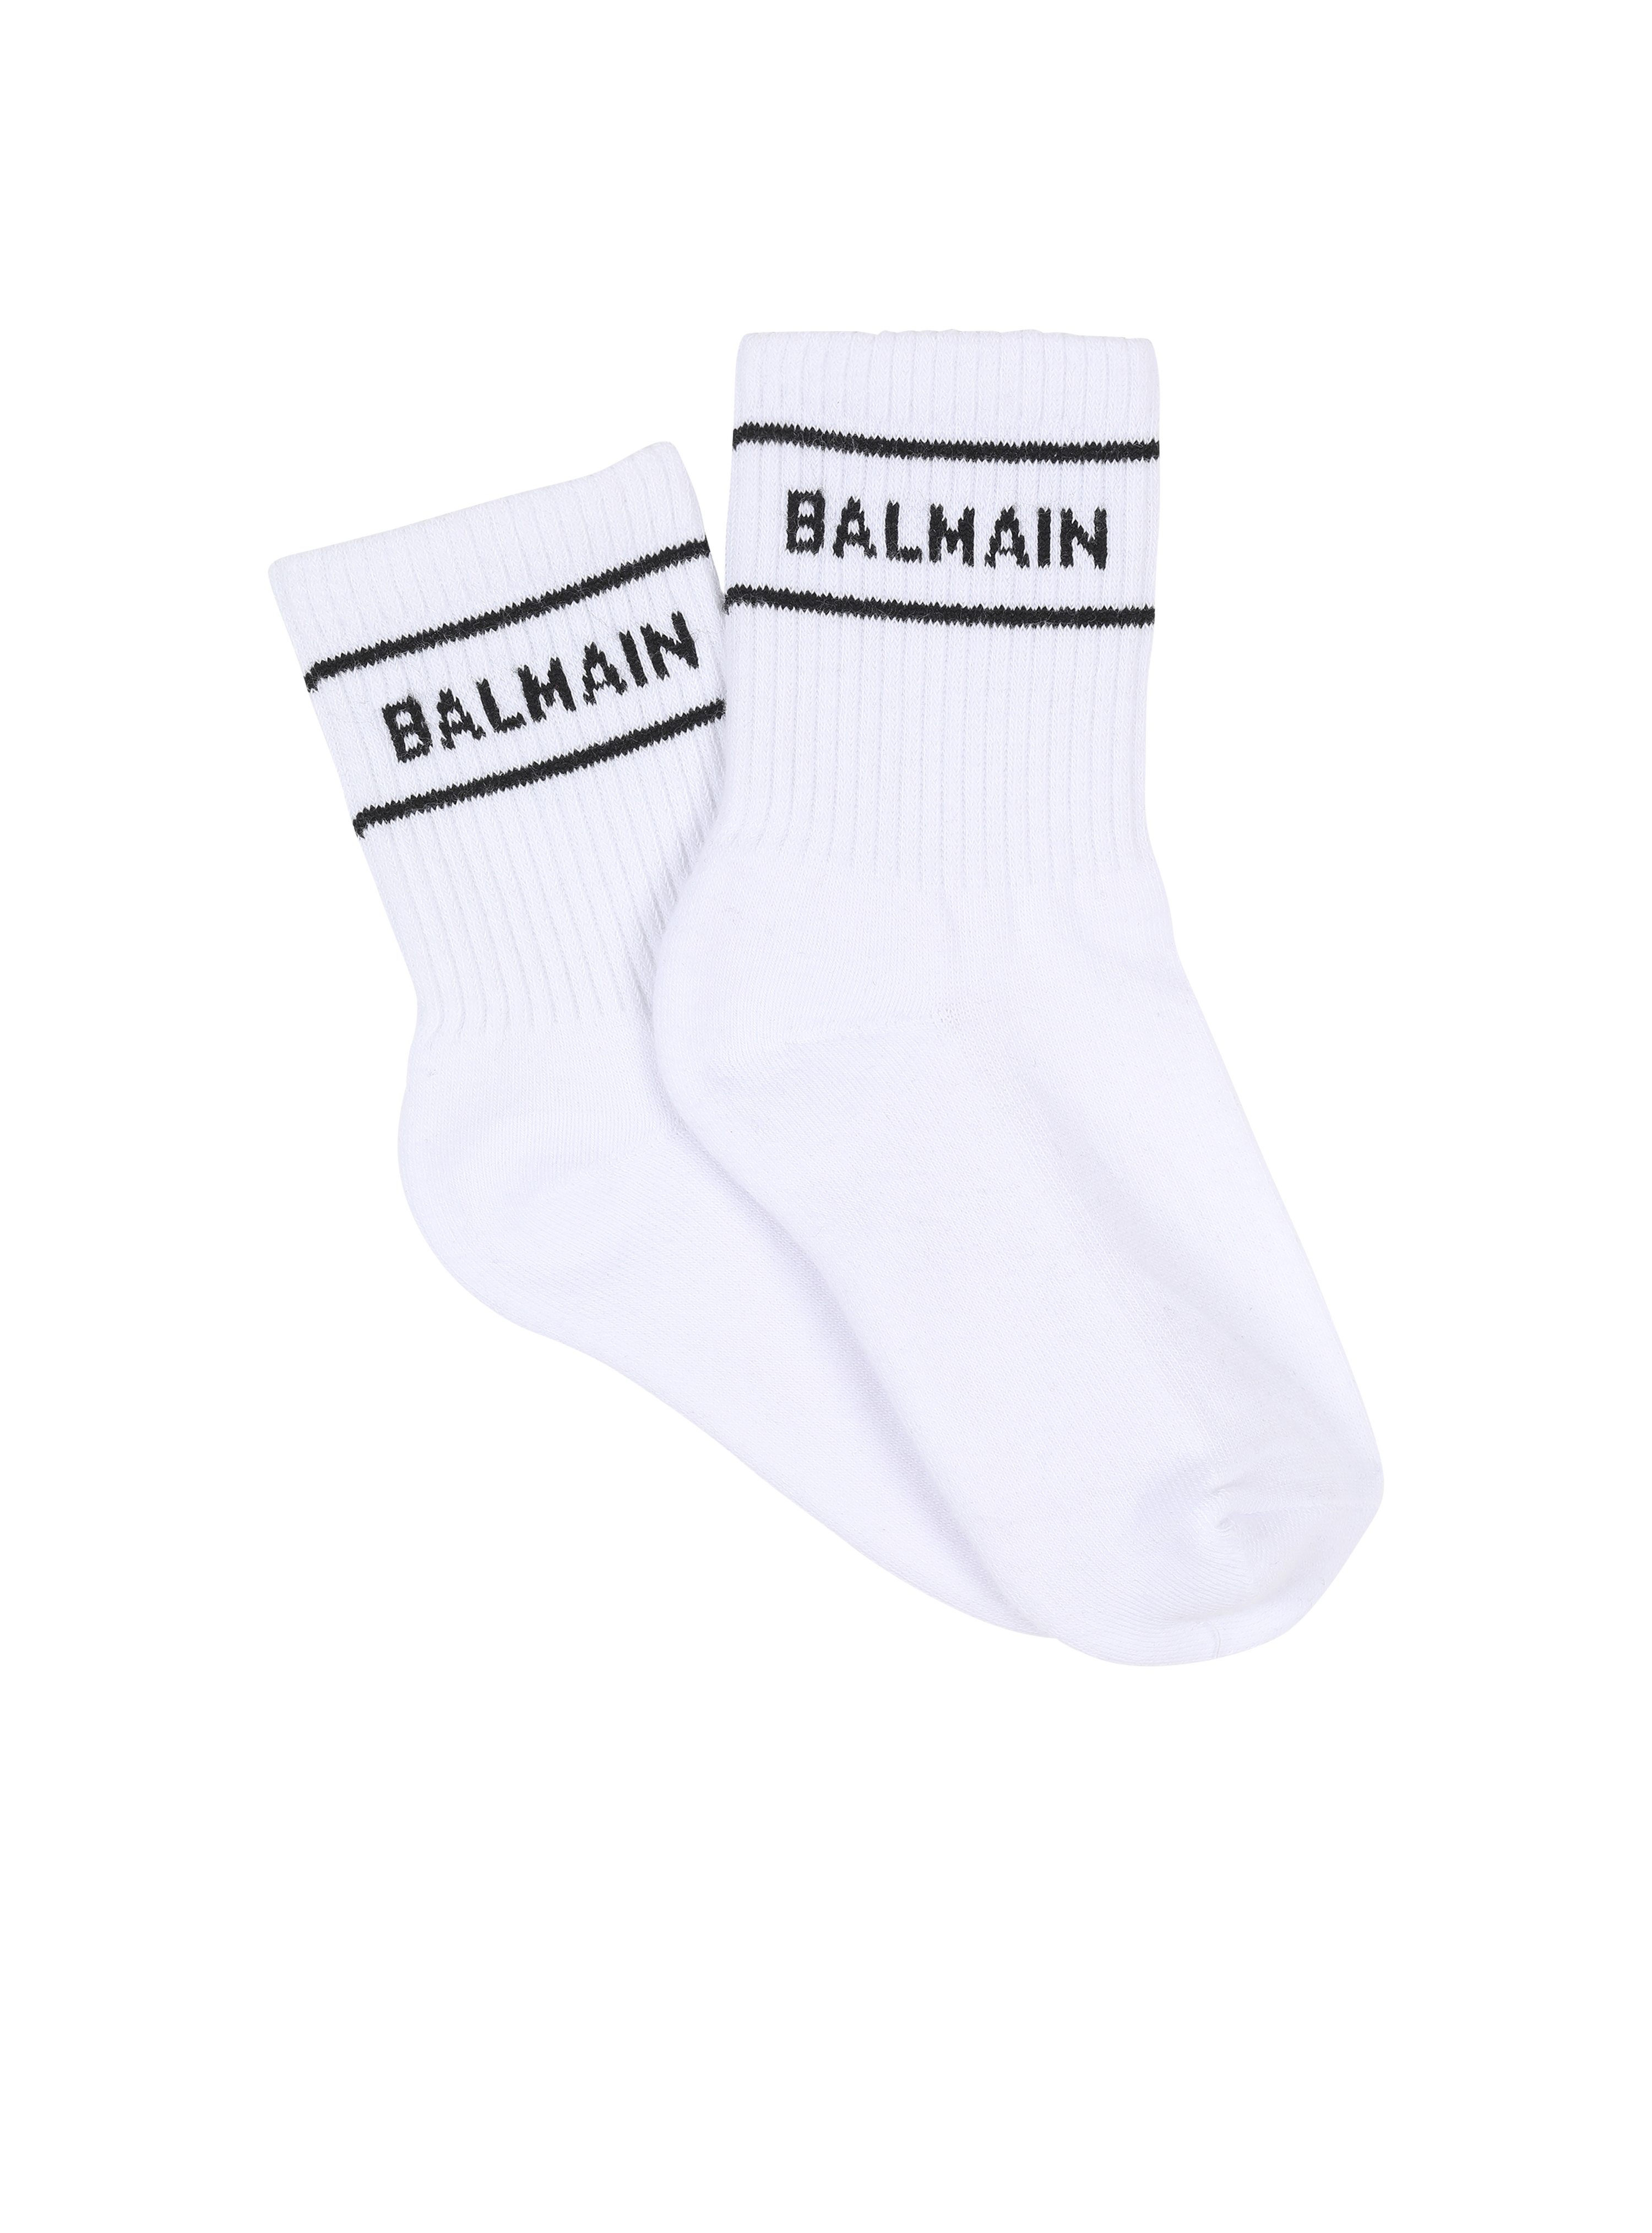 Calzini in cotone con logo Balmain, bianco